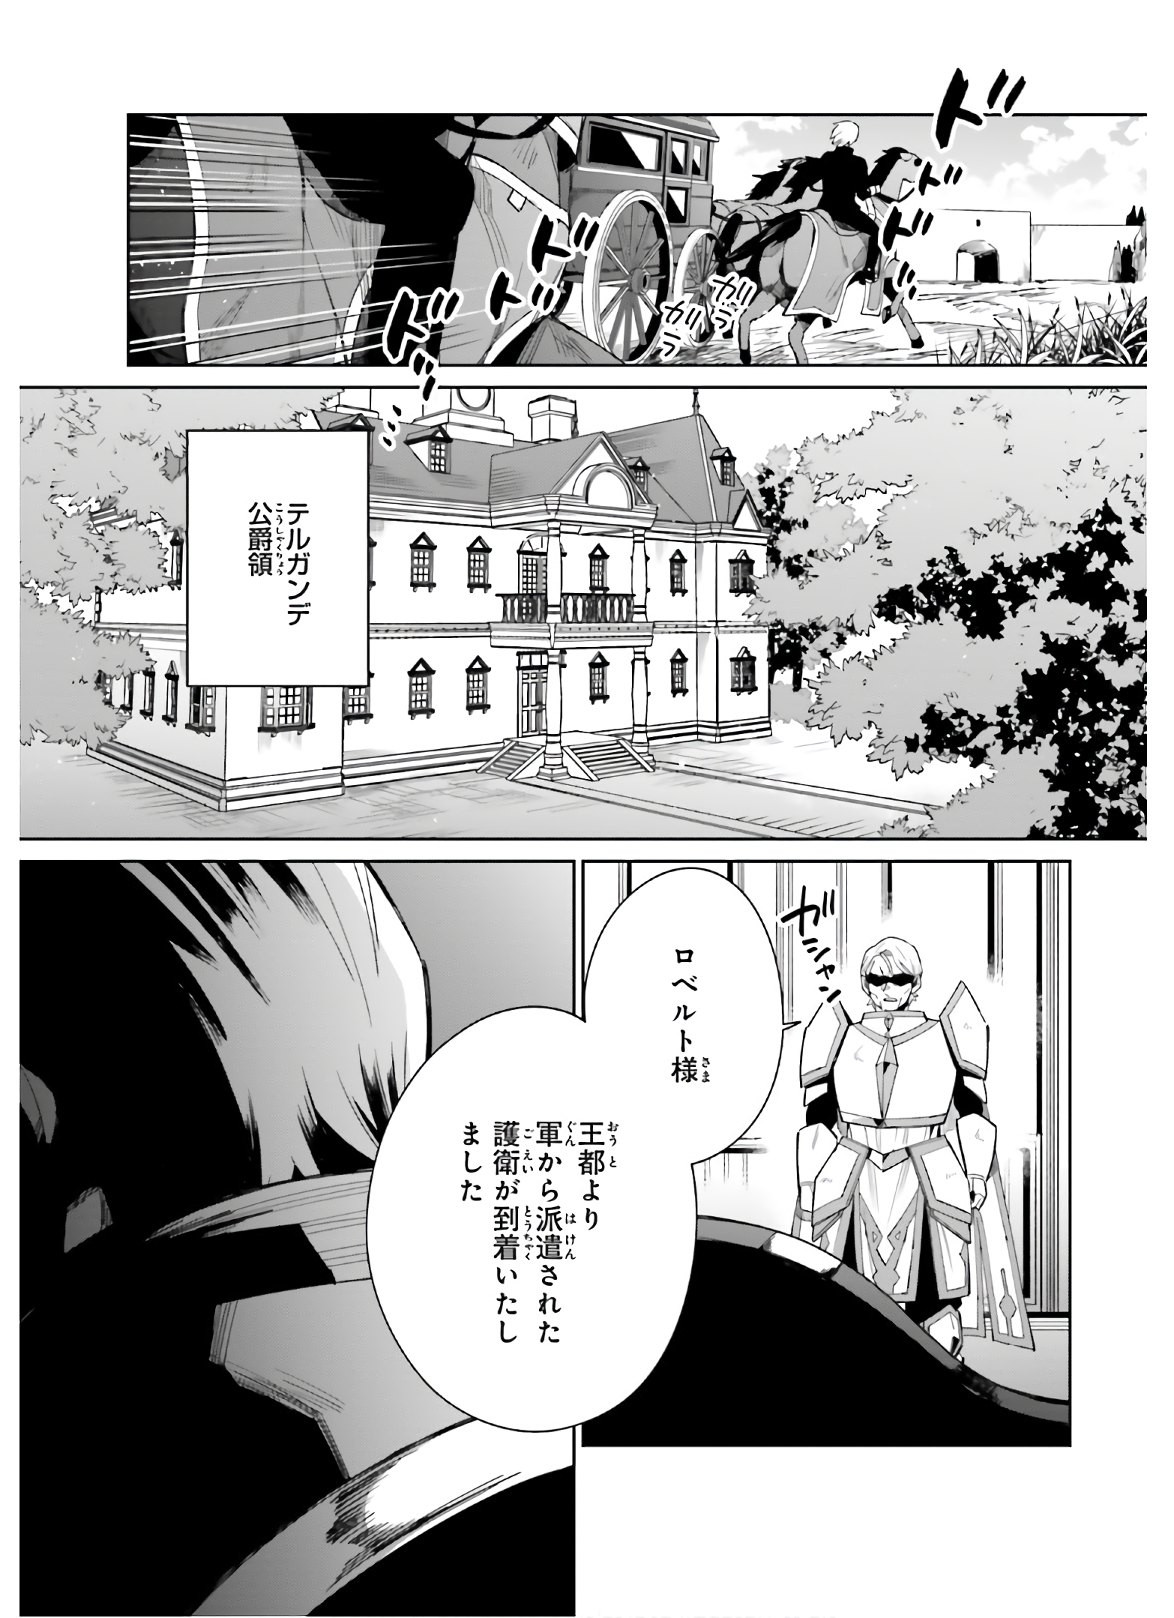 Kage-no-Eiyuu-no-Nichijou-tan-Ichi-no-Yuusha-no-Ura-de-An'yaku-Shite-ita-Saikyou-no-Eijento-Soshiki-ga-Kaitai-sareta-no-de-Shoutai-Kakushite-Hito-nami-no-Nichijou-o-Ouka-suru - Chapter 06 - Page 27